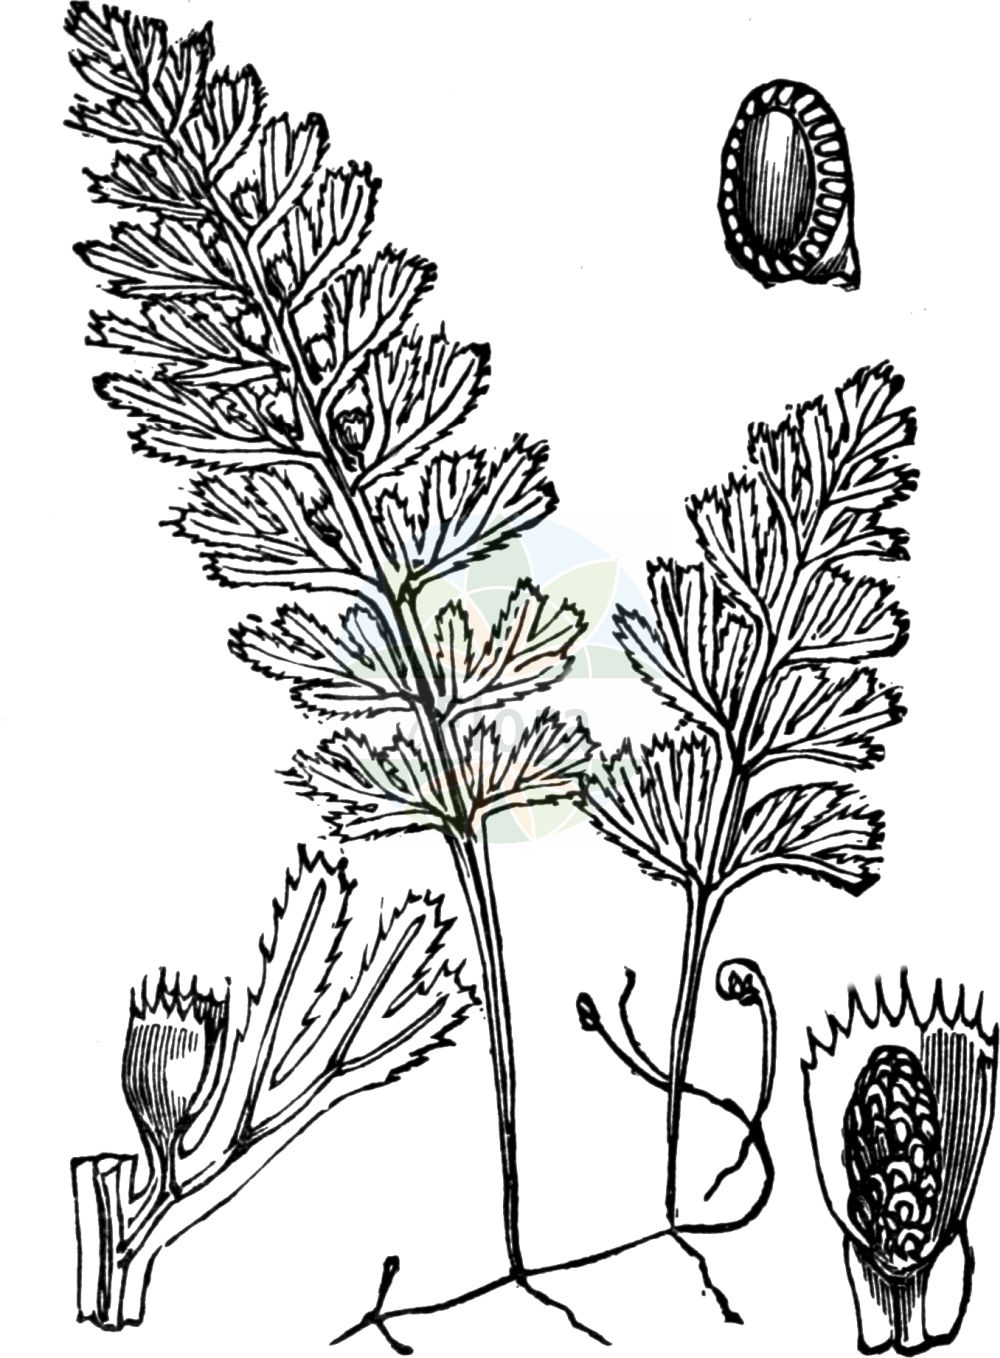 Historische Abbildung von Hymenophyllum tunbrigense (Englischer Hautfarn - Tunbridge Filmy-fern). Das Bild zeigt Blatt, Bluete, Frucht und Same. ---- Historical Drawing of Hymenophyllum tunbrigense (Englischer Hautfarn - Tunbridge Filmy-fern). The image is showing leaf, flower, fruit and seed.(Hymenophyllum tunbrigense,Englischer Hautfarn,Tunbridge Filmy-fern,Hymenophyllum tunbrigense,Trichomanes tunbrigense,Englischer Hautfarn,Tunbridge Filmy-fern,Hymenophyllum,Hautfarn,Filmy Ferns,Hymenophyllaceae,Hautfarngewächse,Filmy Fern family,Blatt,Bluete,Frucht,Same,leaf,flower,fruit,seed,Fitch et al. (1880))